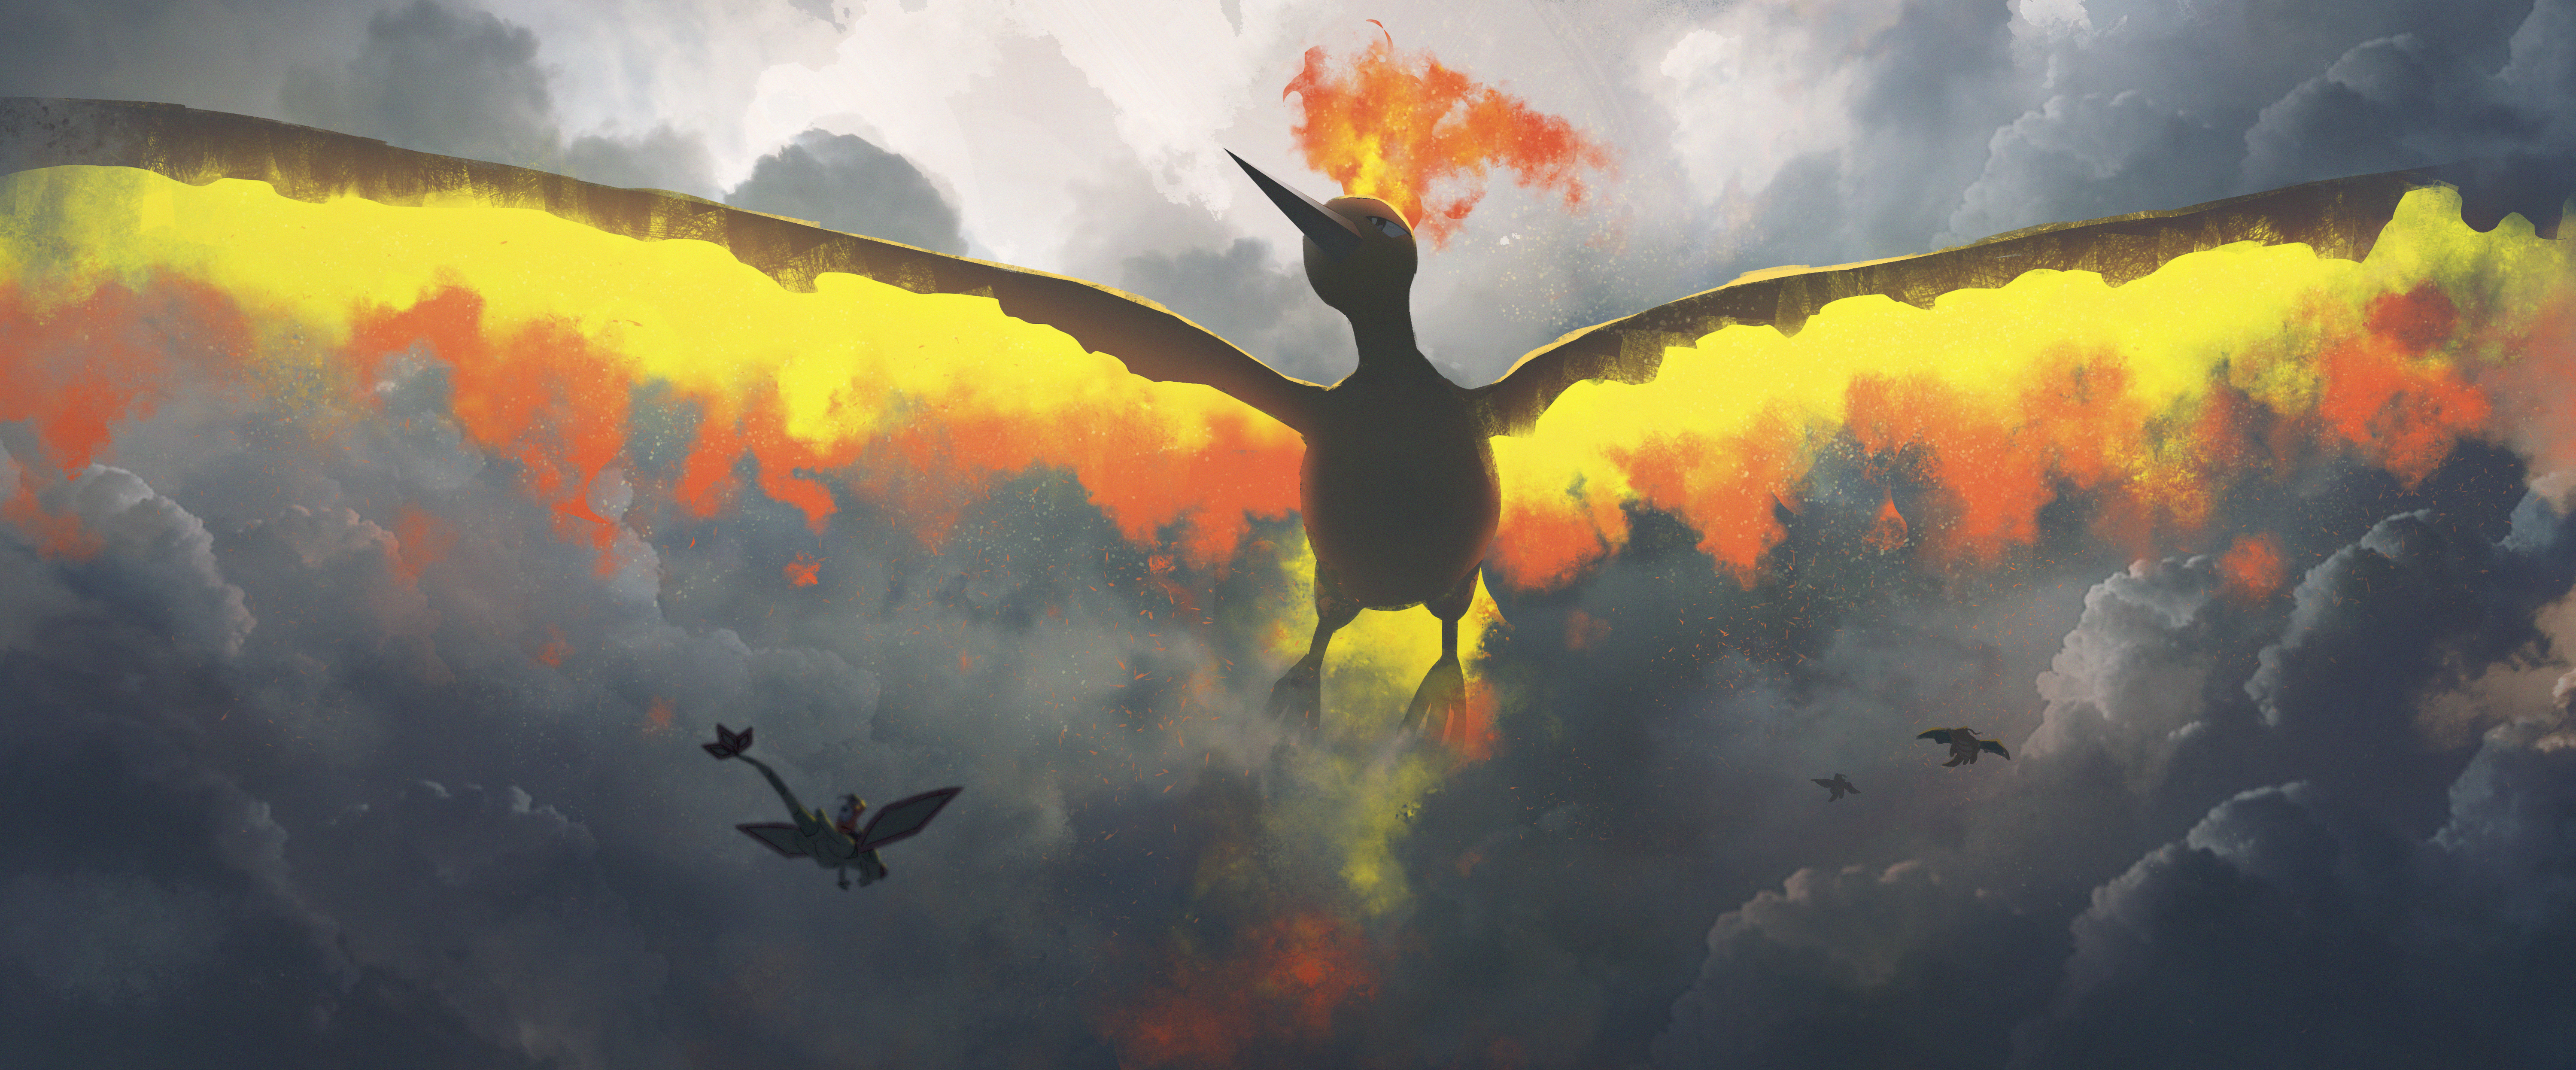 Asteroid Artist Pokemon Anime Moltres Flygon Dragonite Charizard 6000x2492